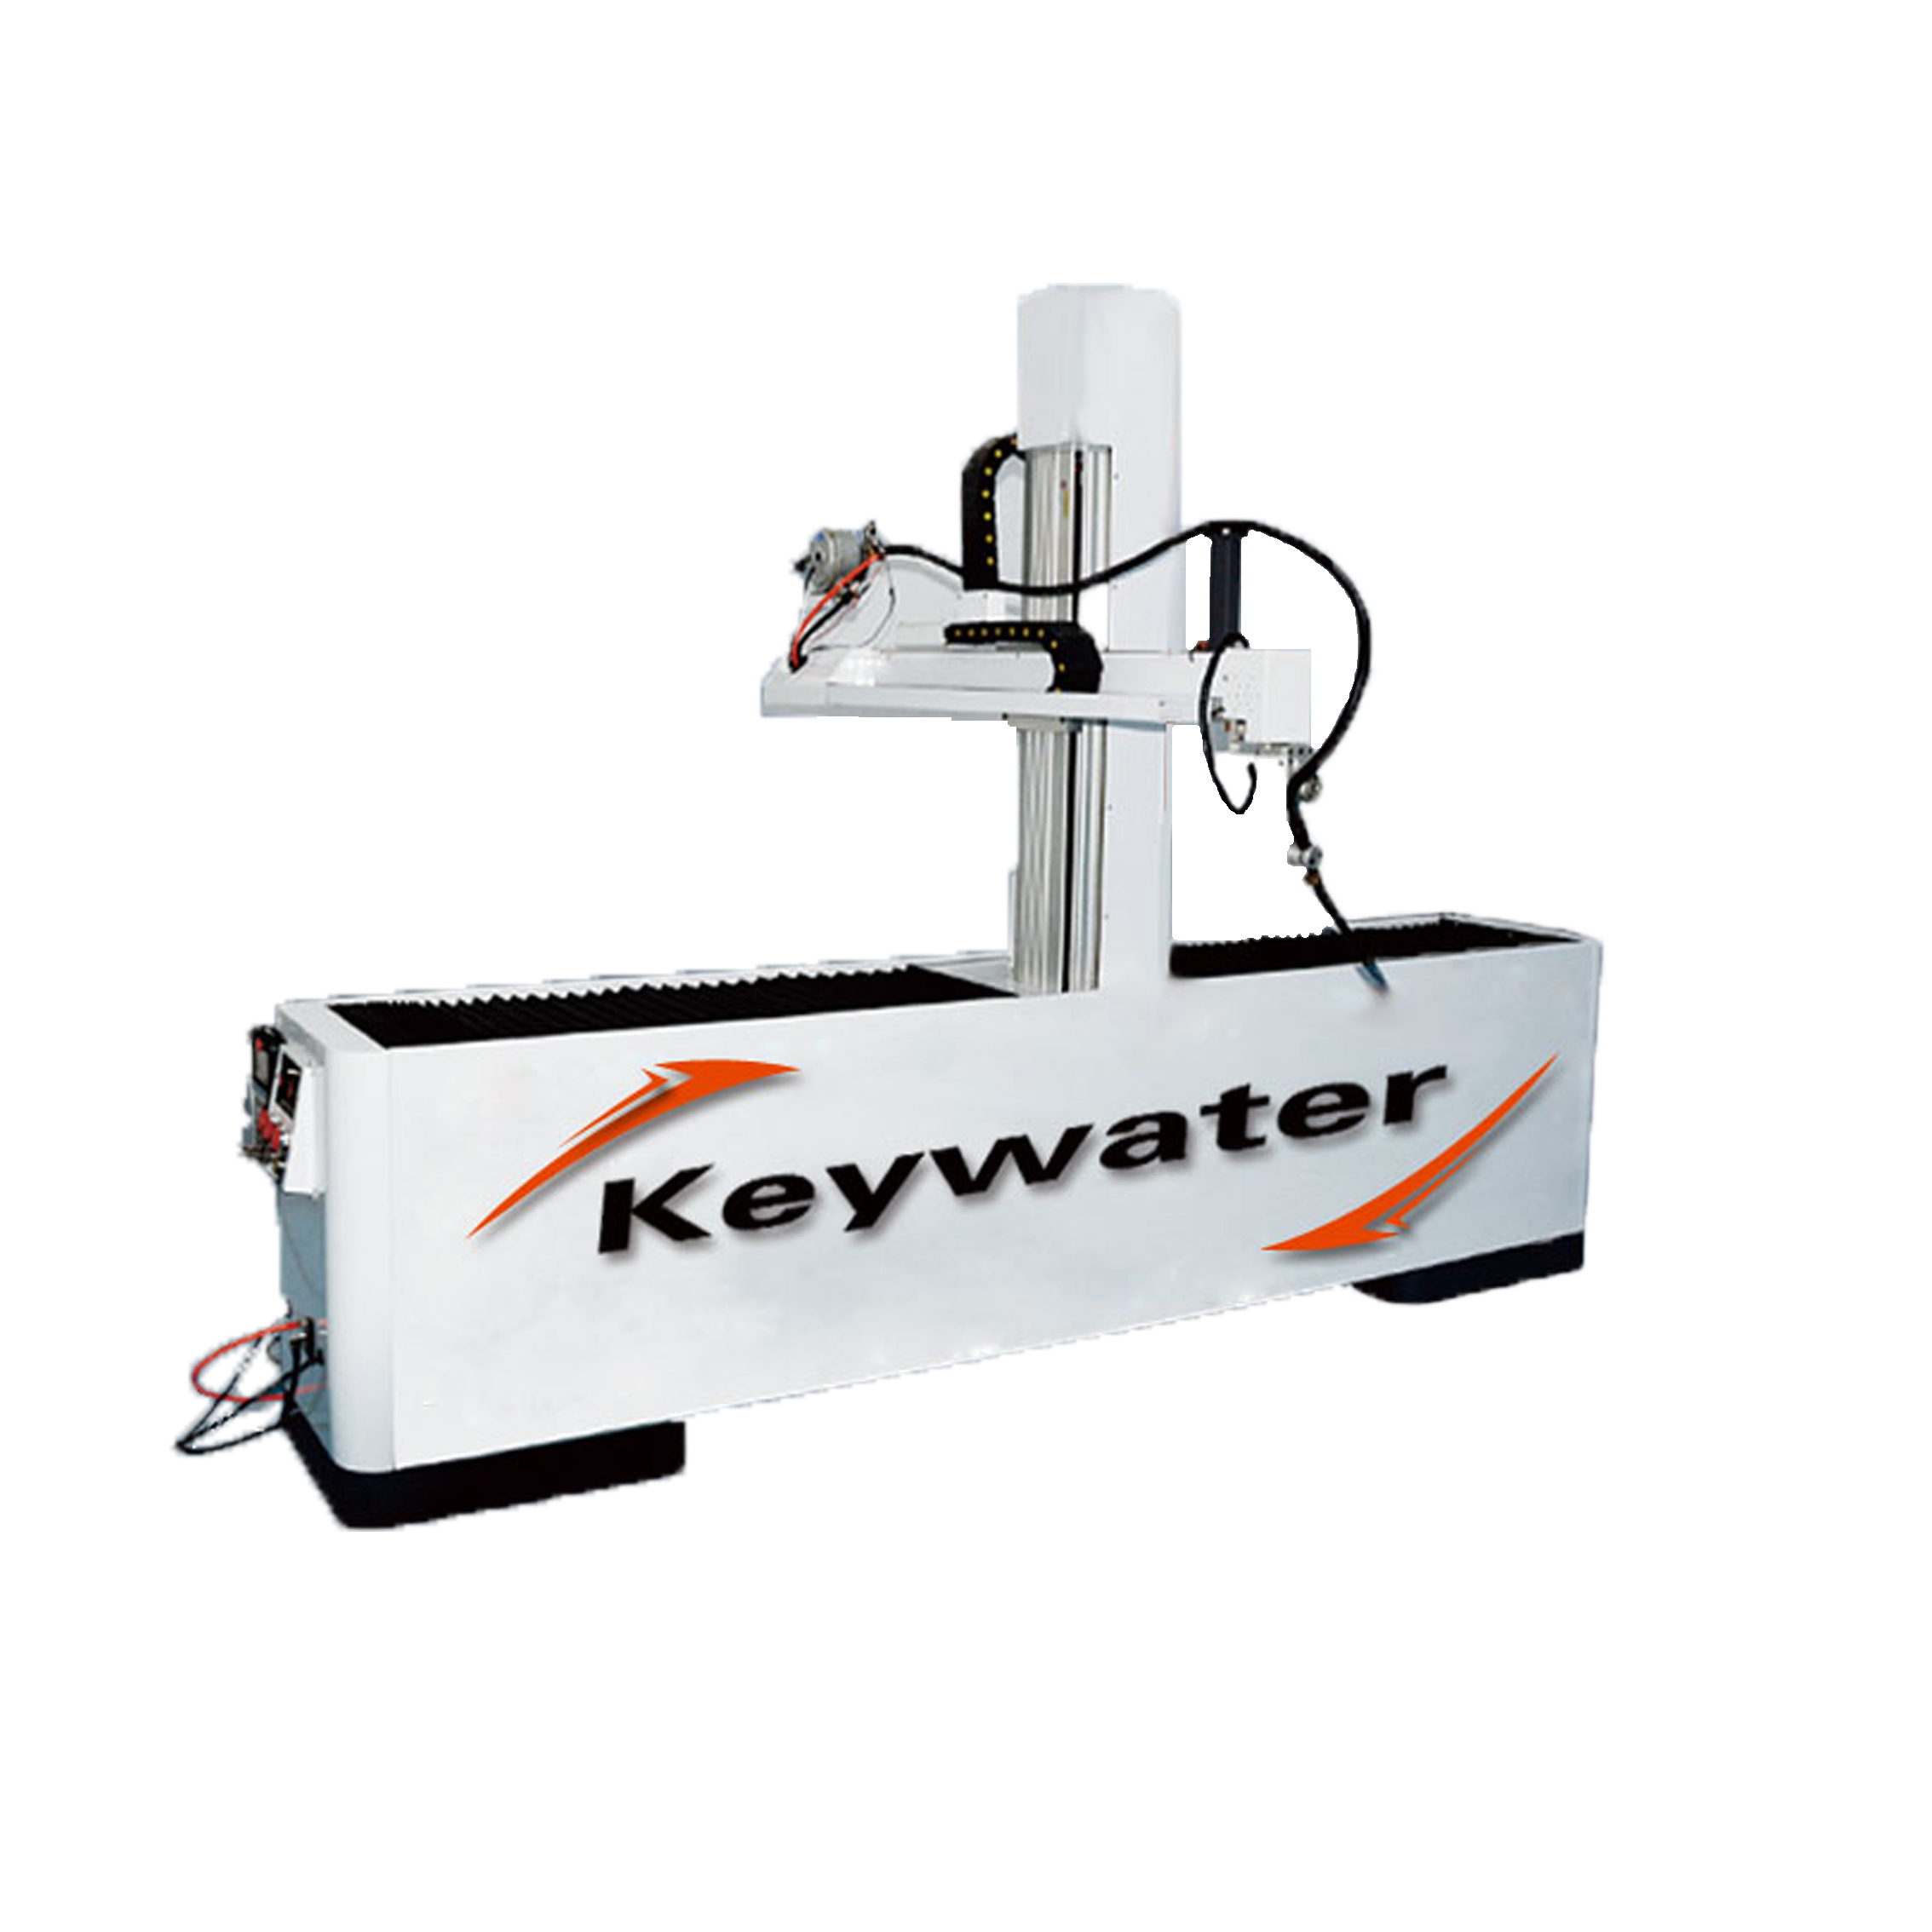 凯沃智造	自动焊接机器人	全自动焊接机械手	自动铝焊	自动不锈钢焊